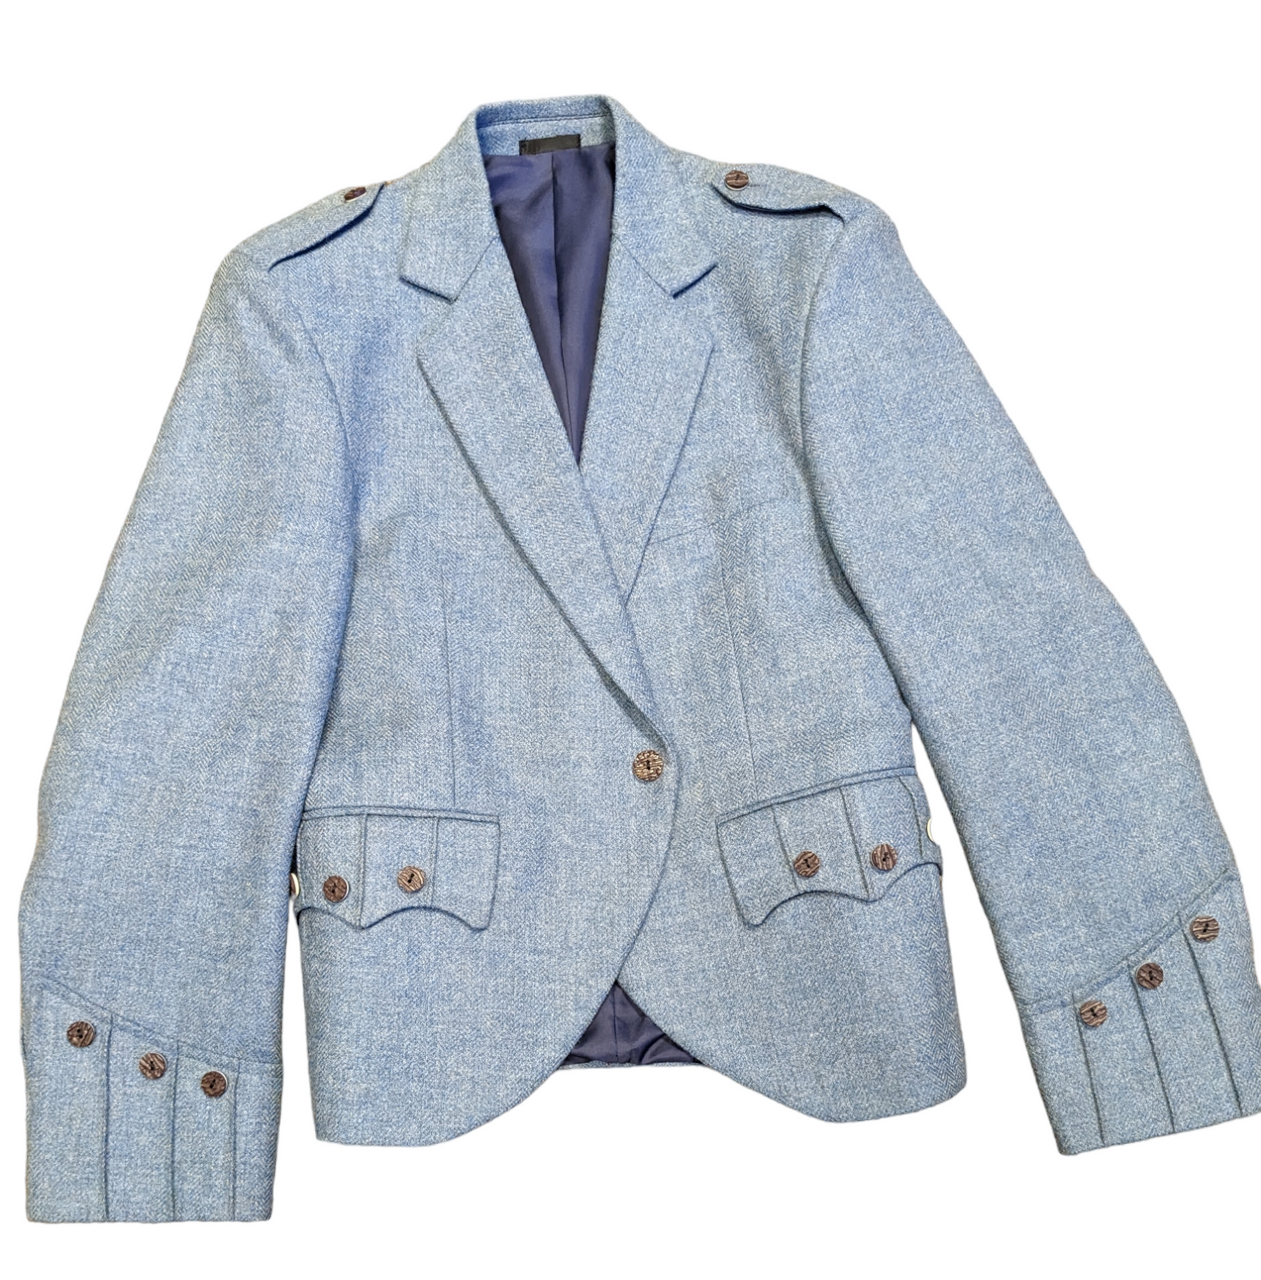 New Lovat Blue Herringbone Tweed Jacket - 40R